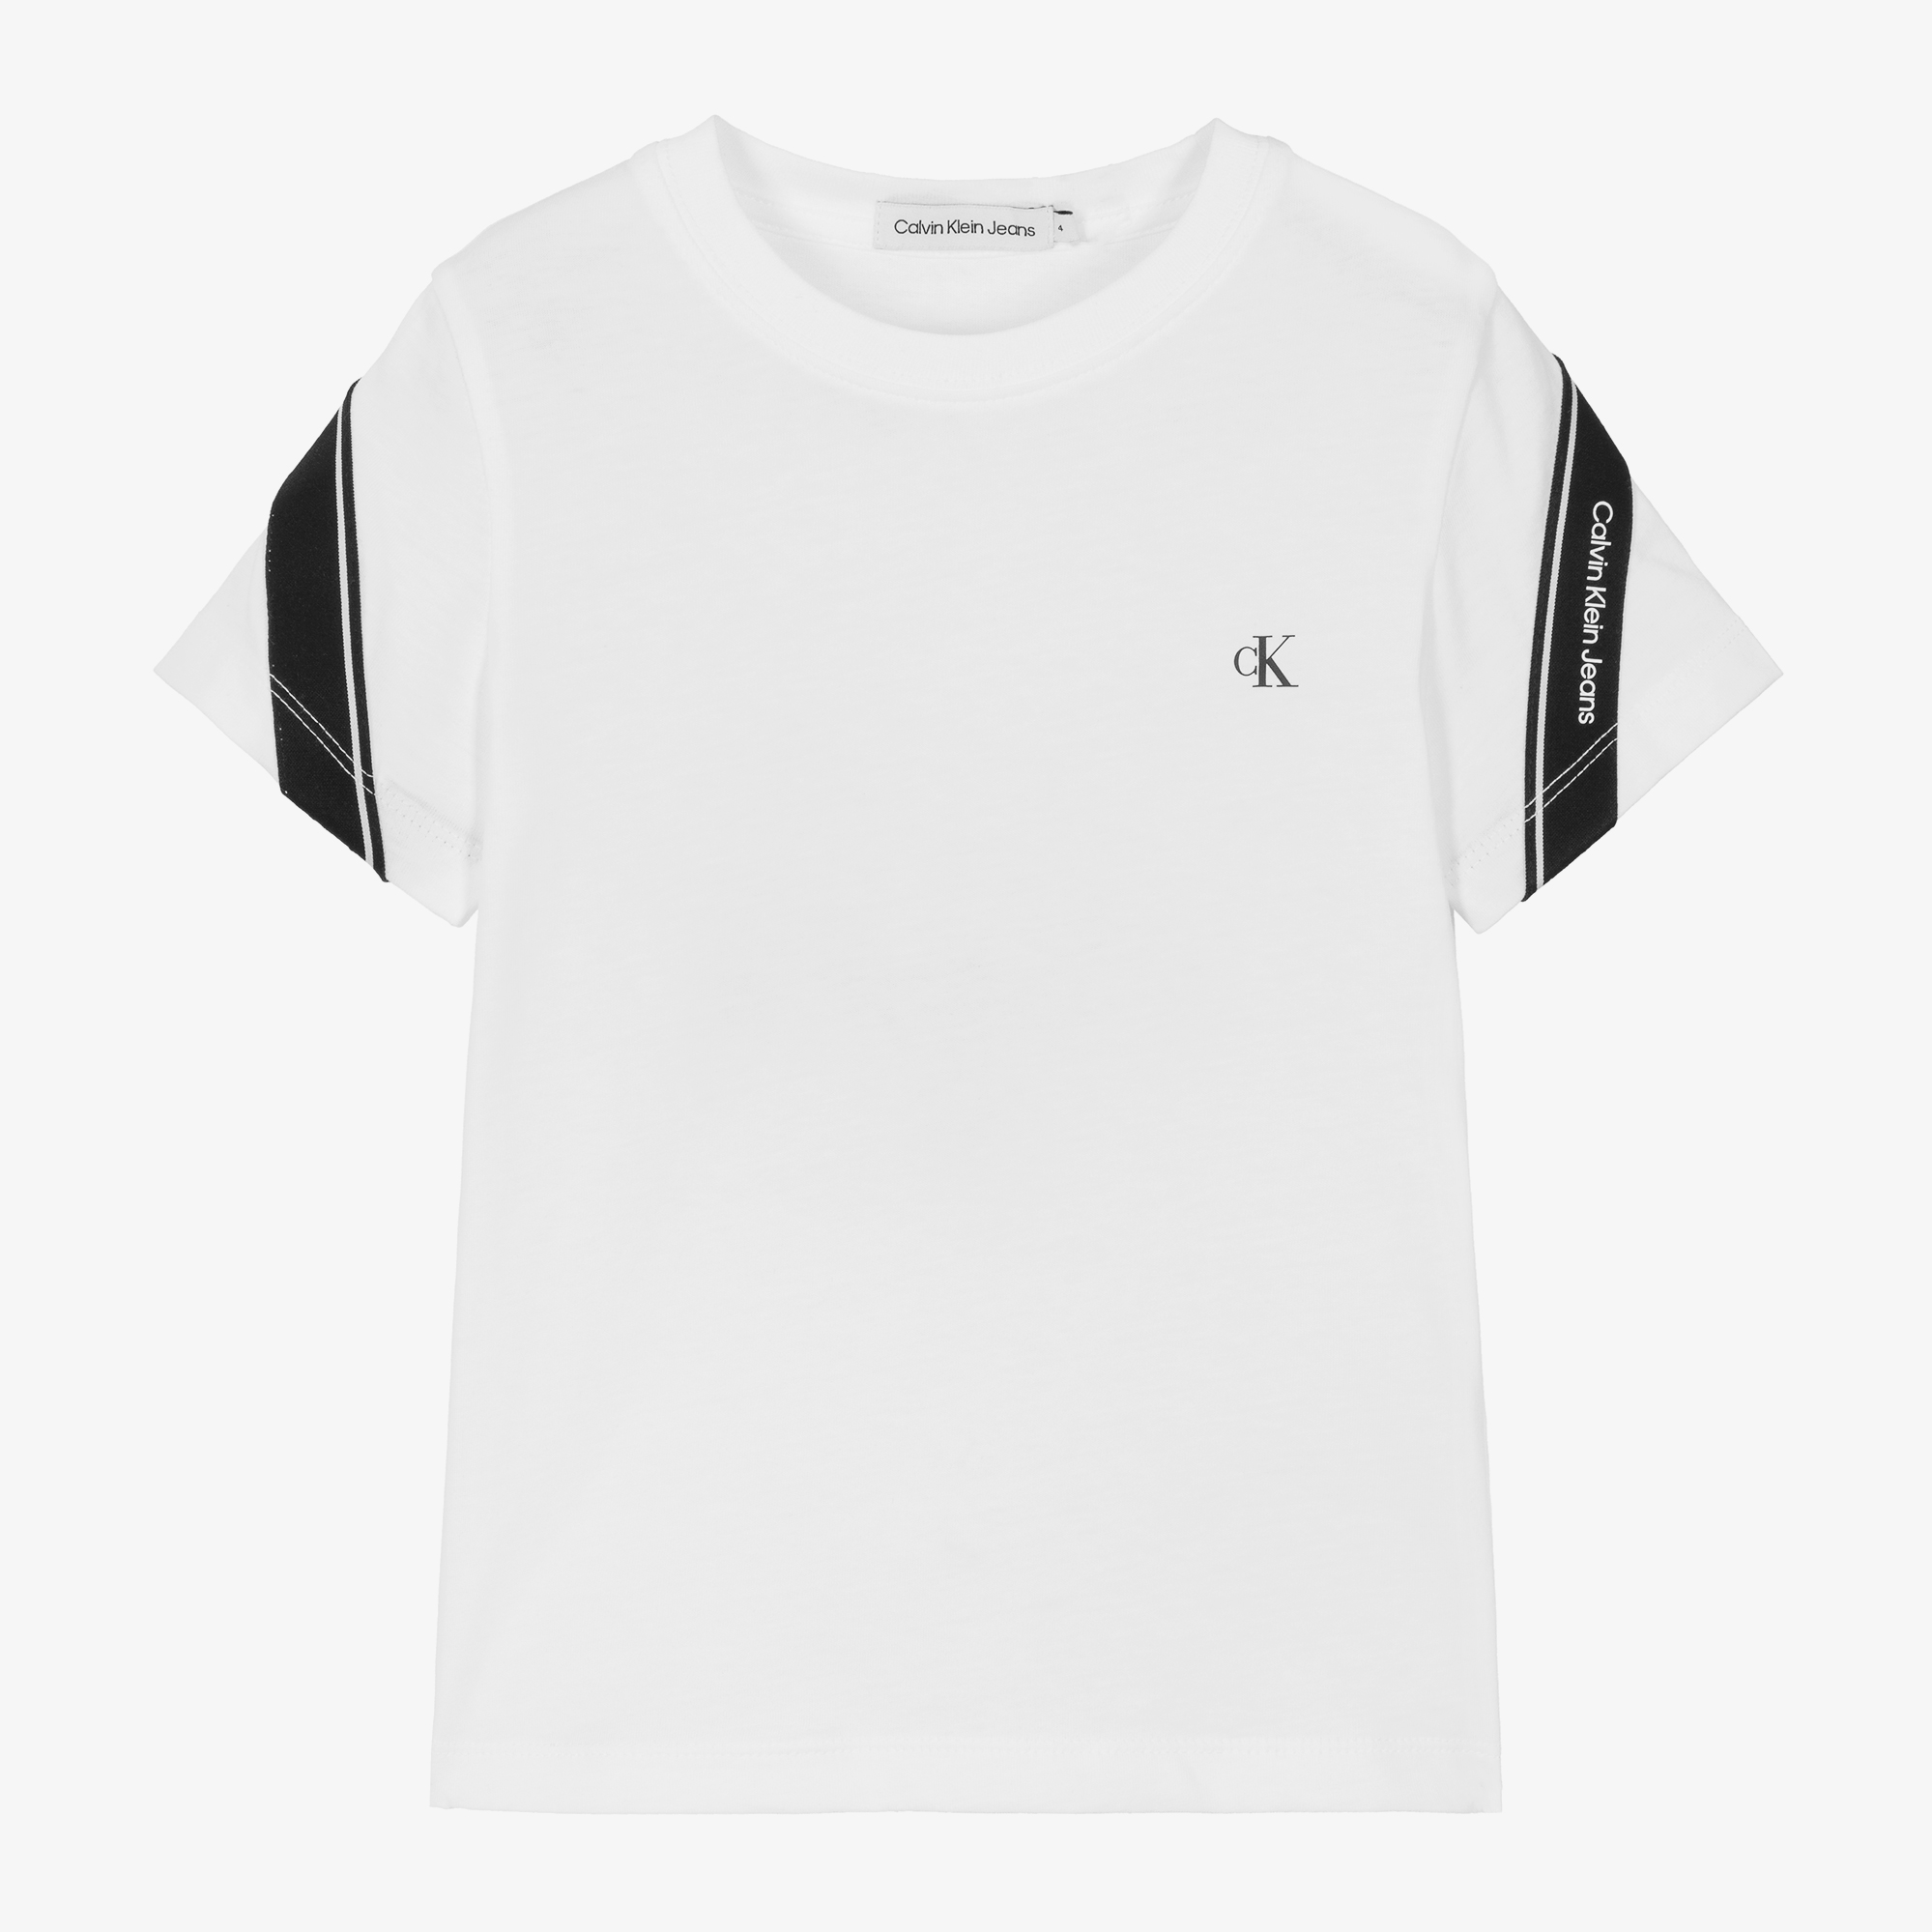 New Calvin Klein Men's CK ONE M Medium White Crewneck T-Shirt Sleepwear S/S  NWT